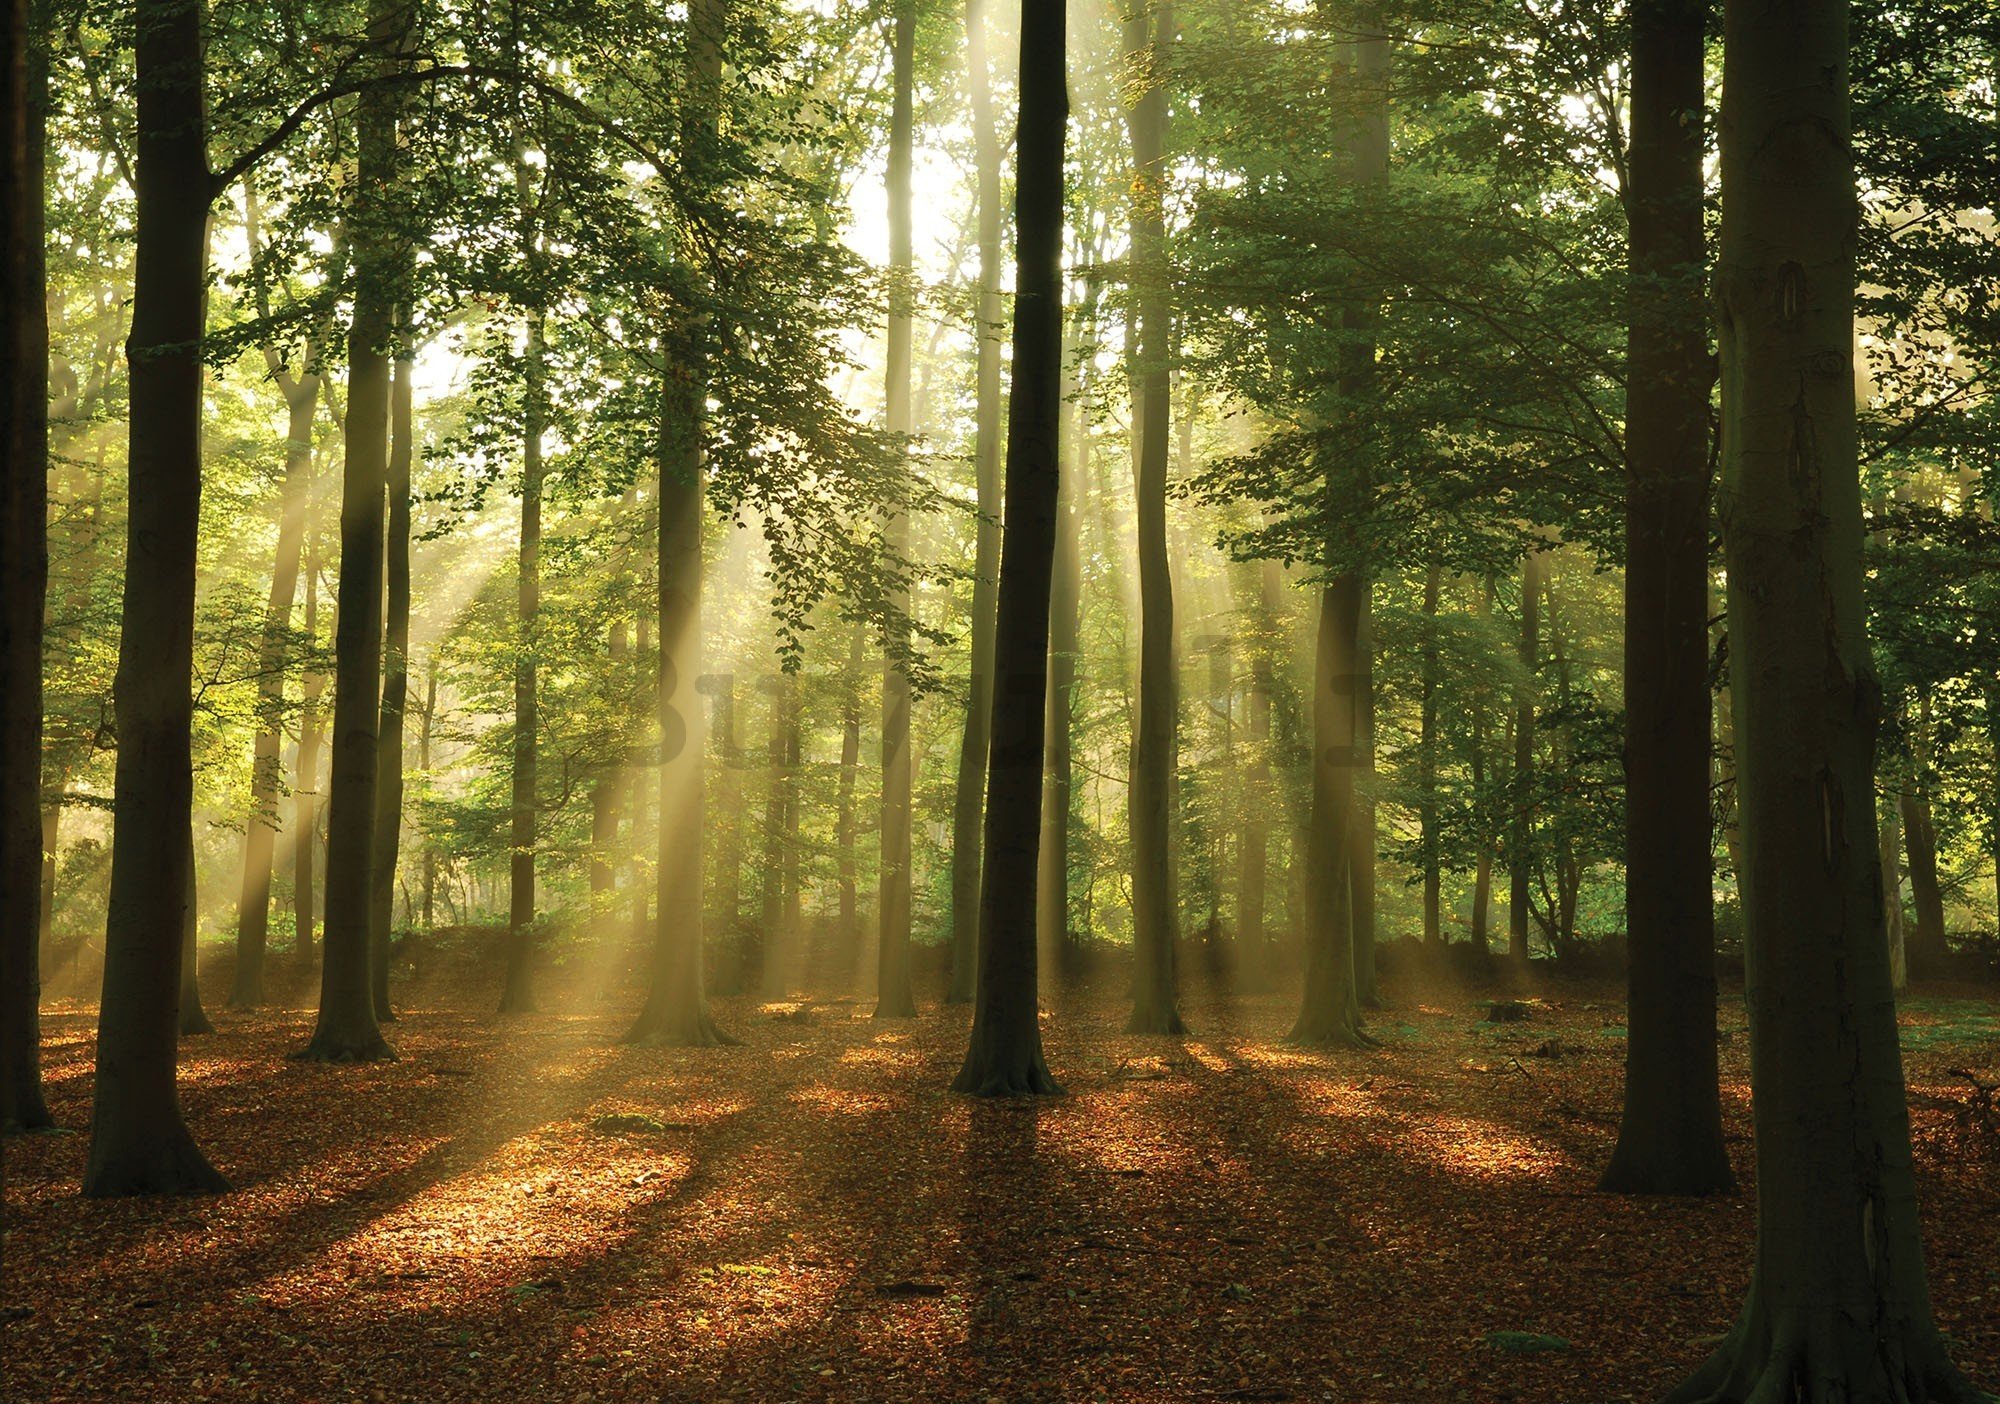 Vlies foto tapeta: Sunce u šumi (4) - 416x254 cm